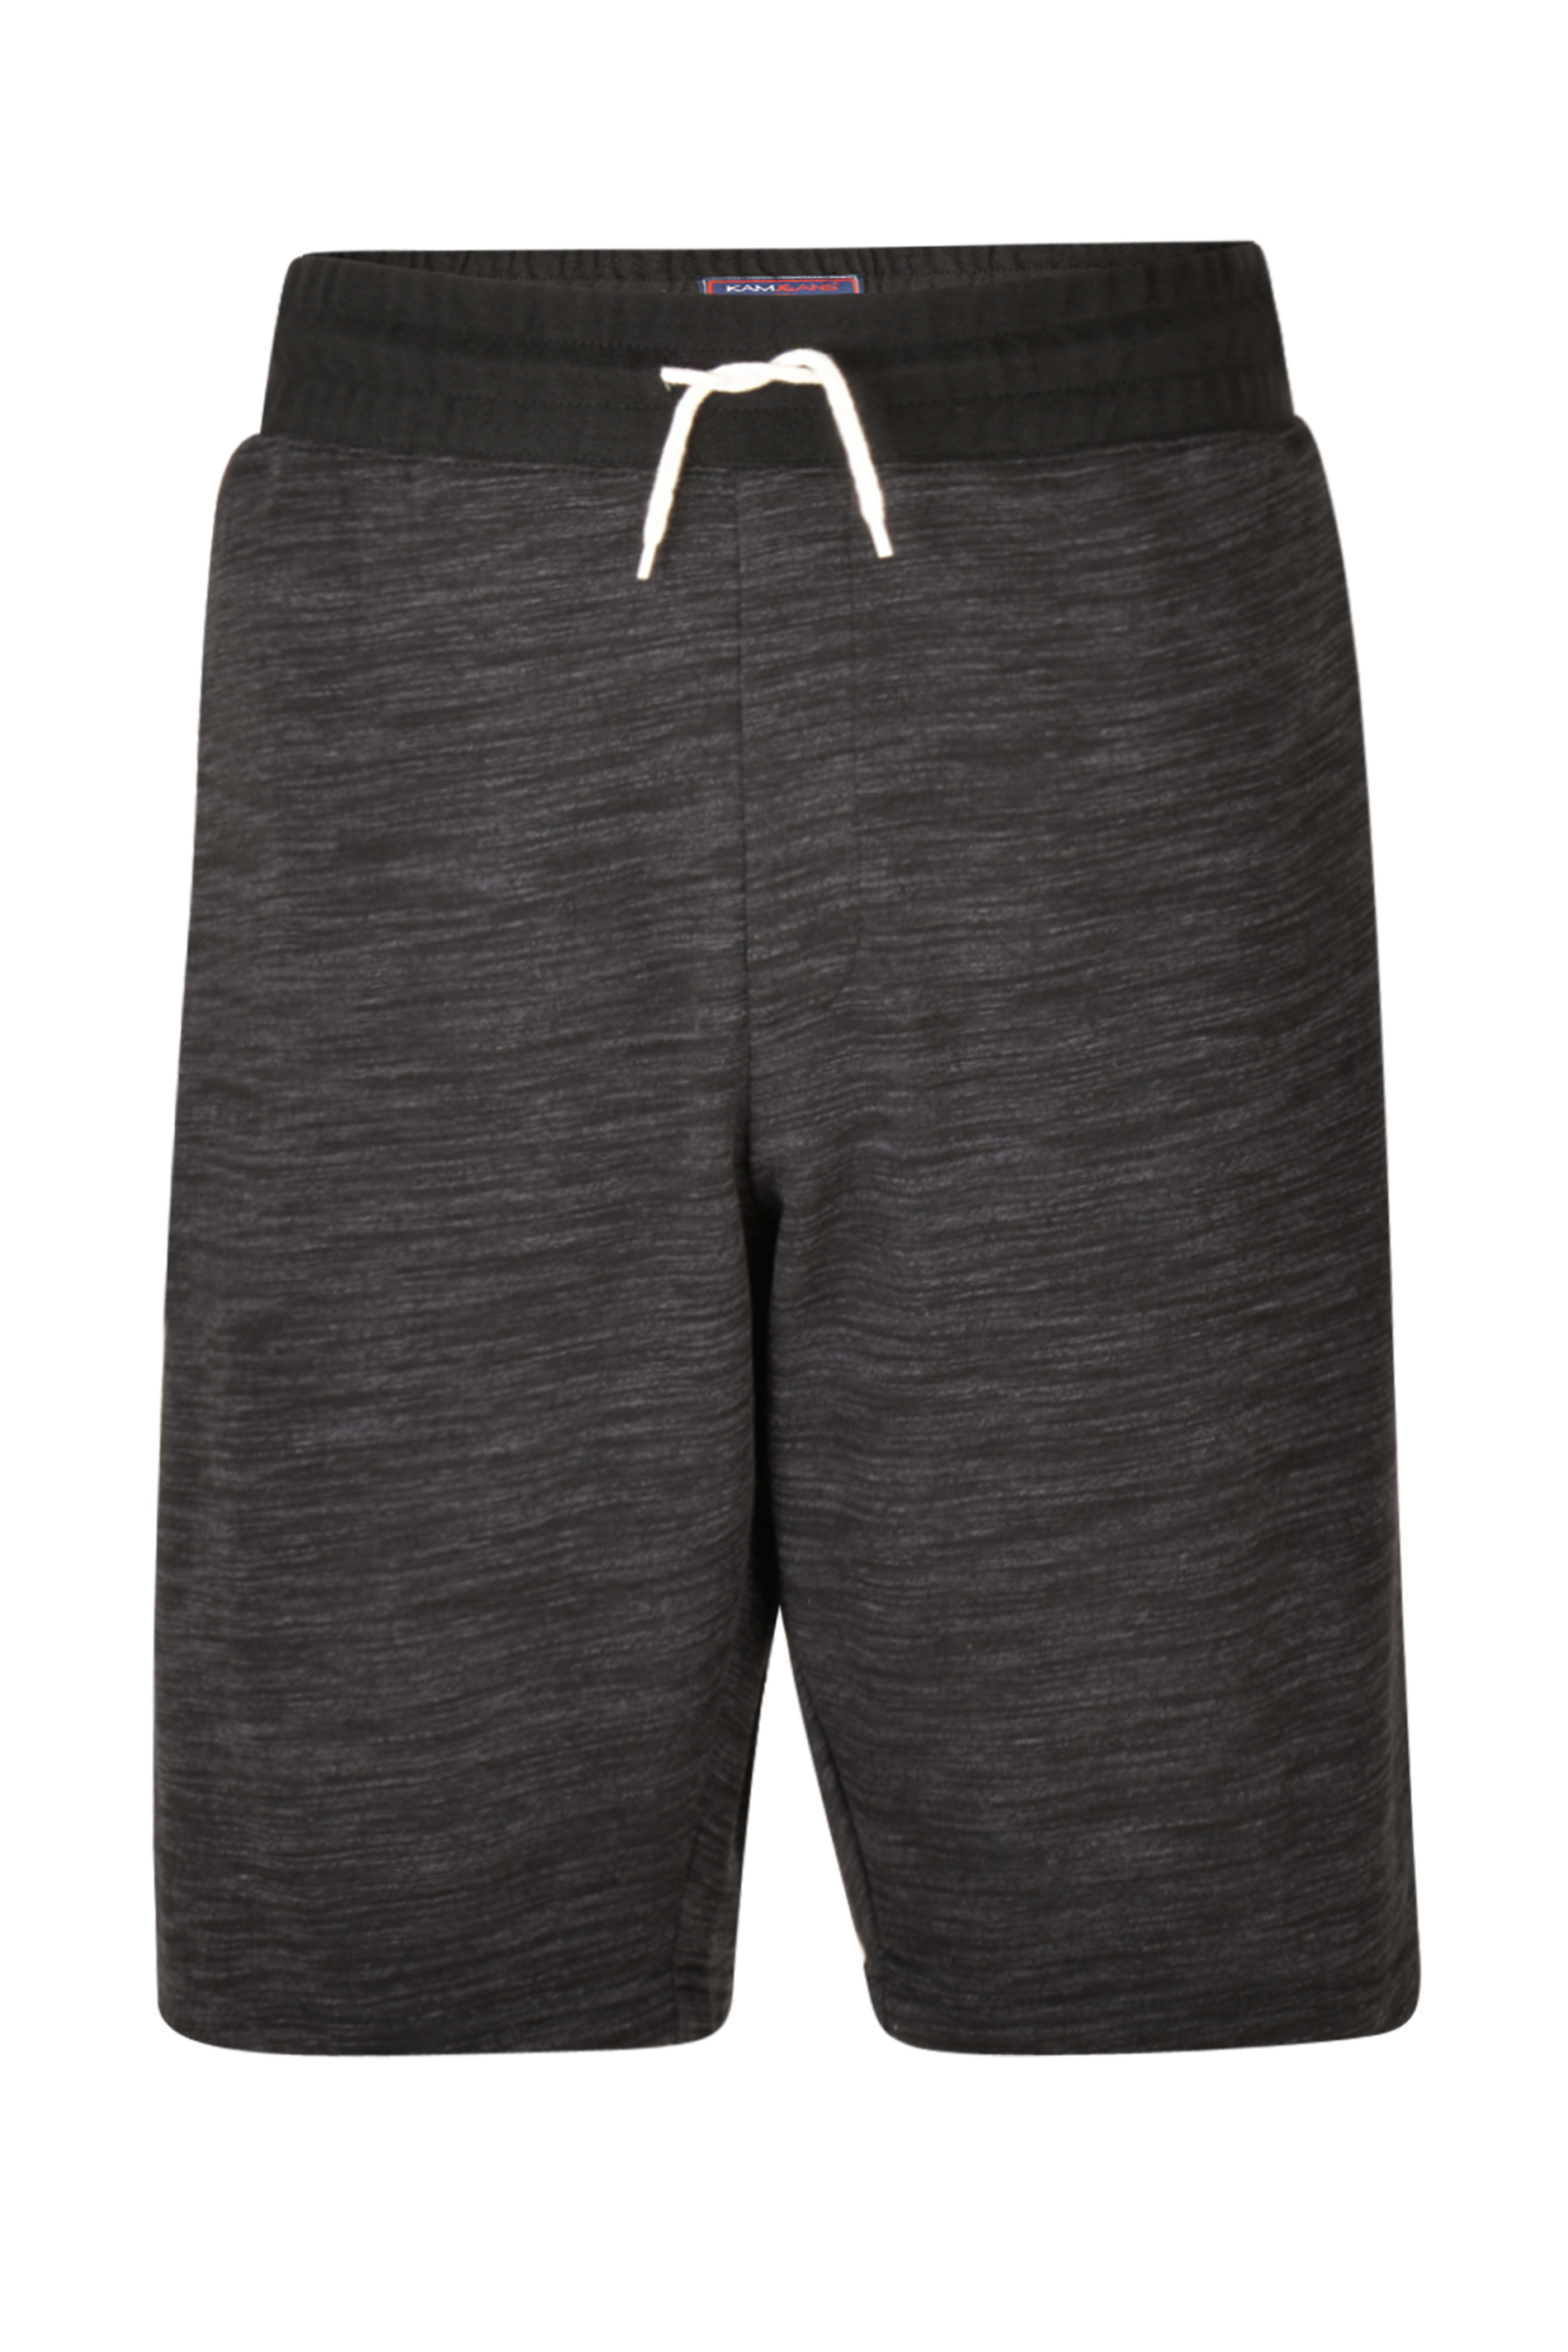 KAM Big & Tall Charcoal Grey Jogger Shorts 1